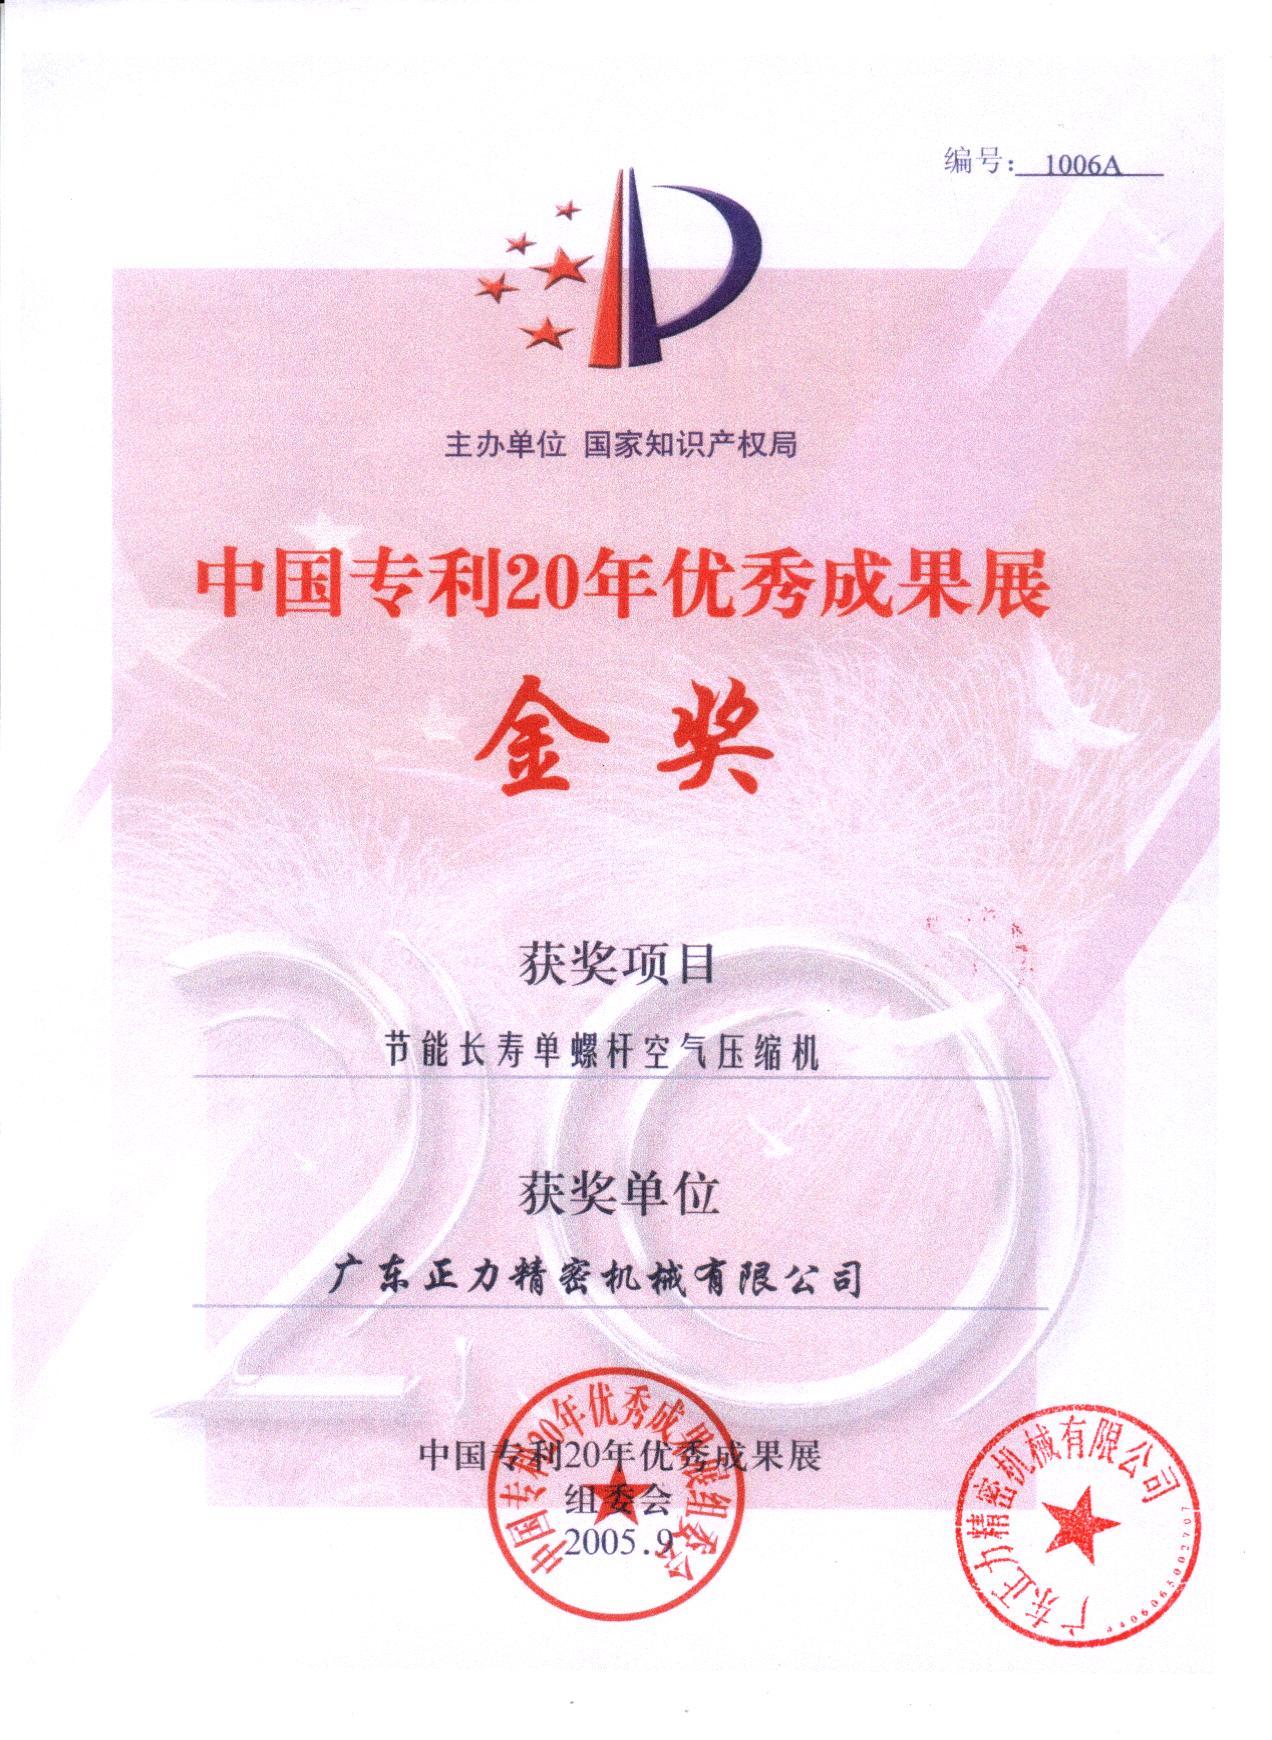 中國專利20年優秀成果展金獎